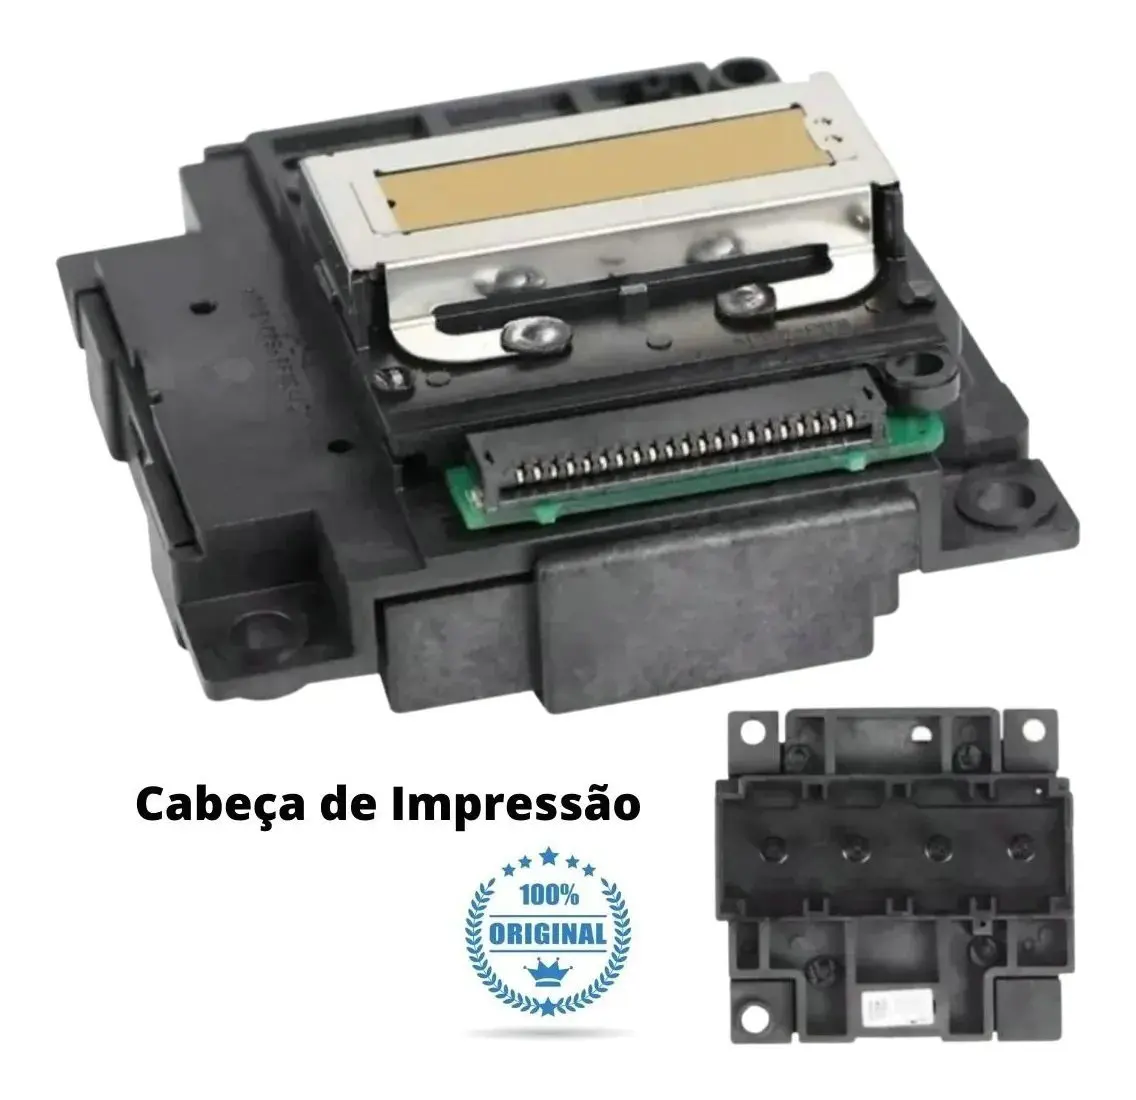 

Печатающая головка, печатающая головка для Epson FA04010 FA04000 L120 L210 L300 L350 L355 L360 L380 L550 L555 L551 L558 XP-412 XP413